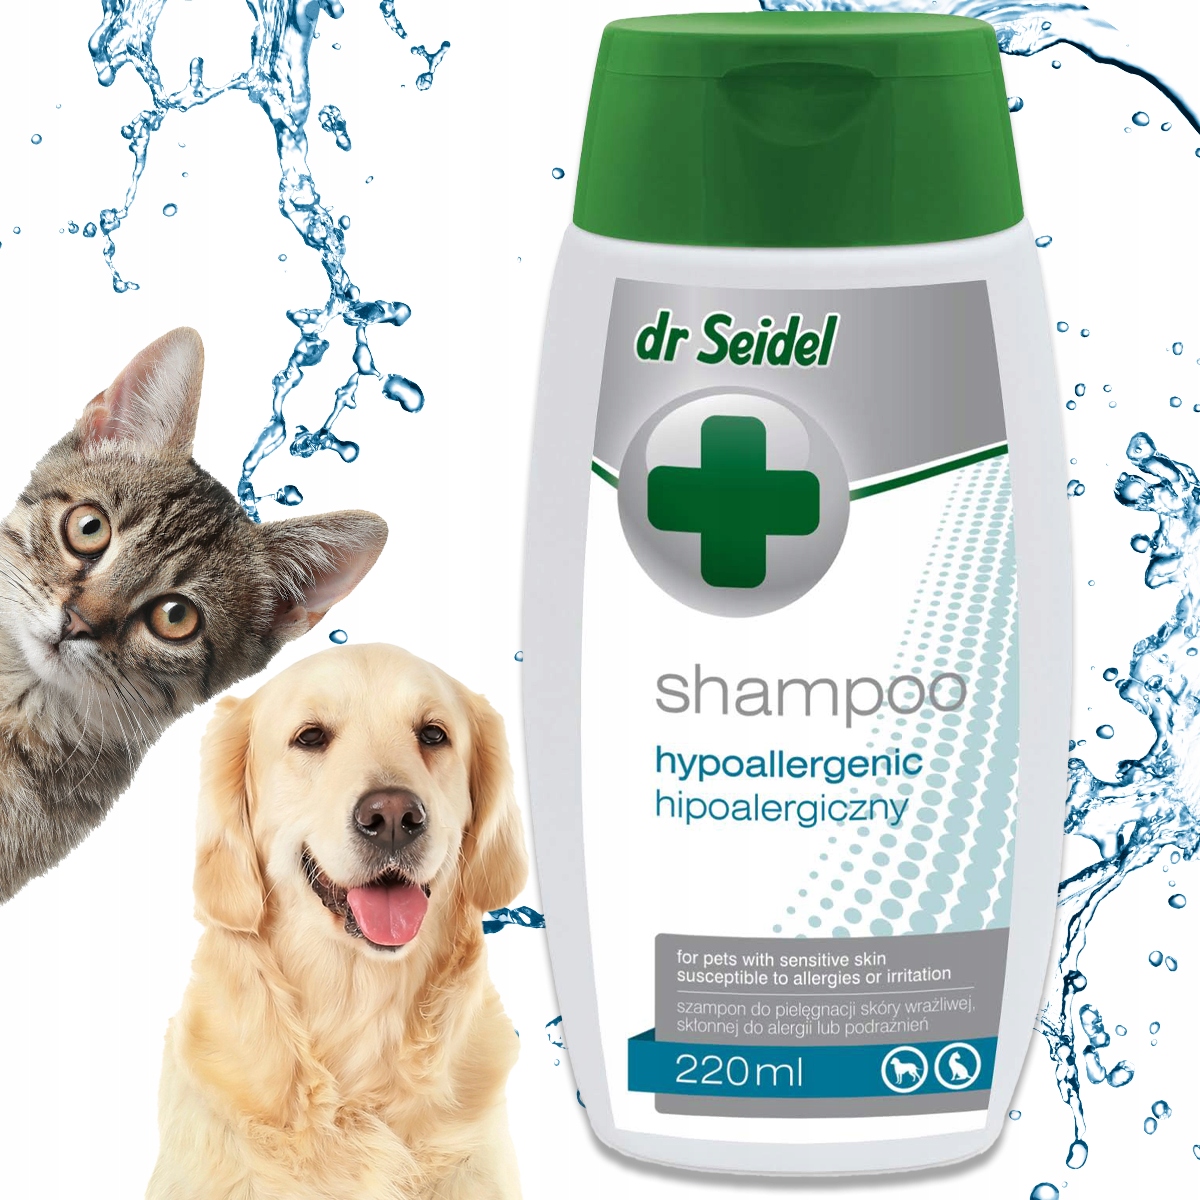 szampon dla kotów zmniejszając alergie